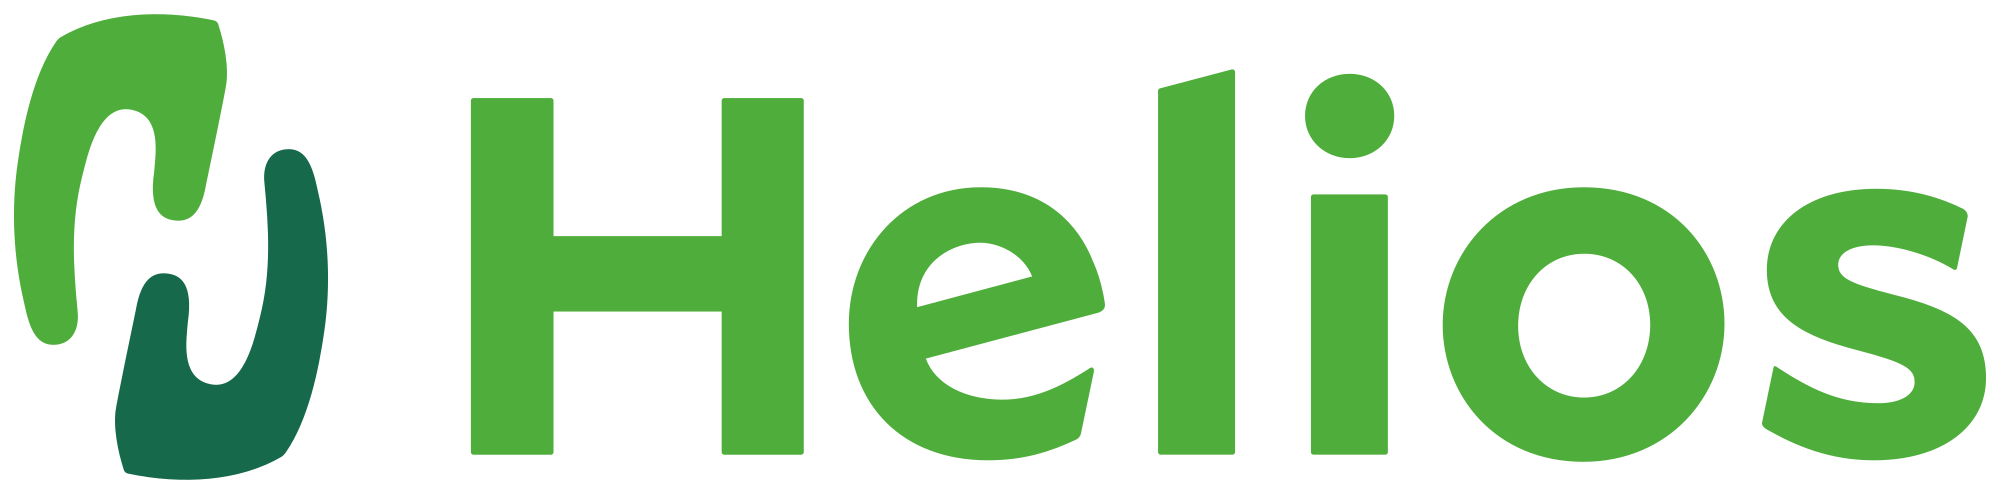 helio health logo